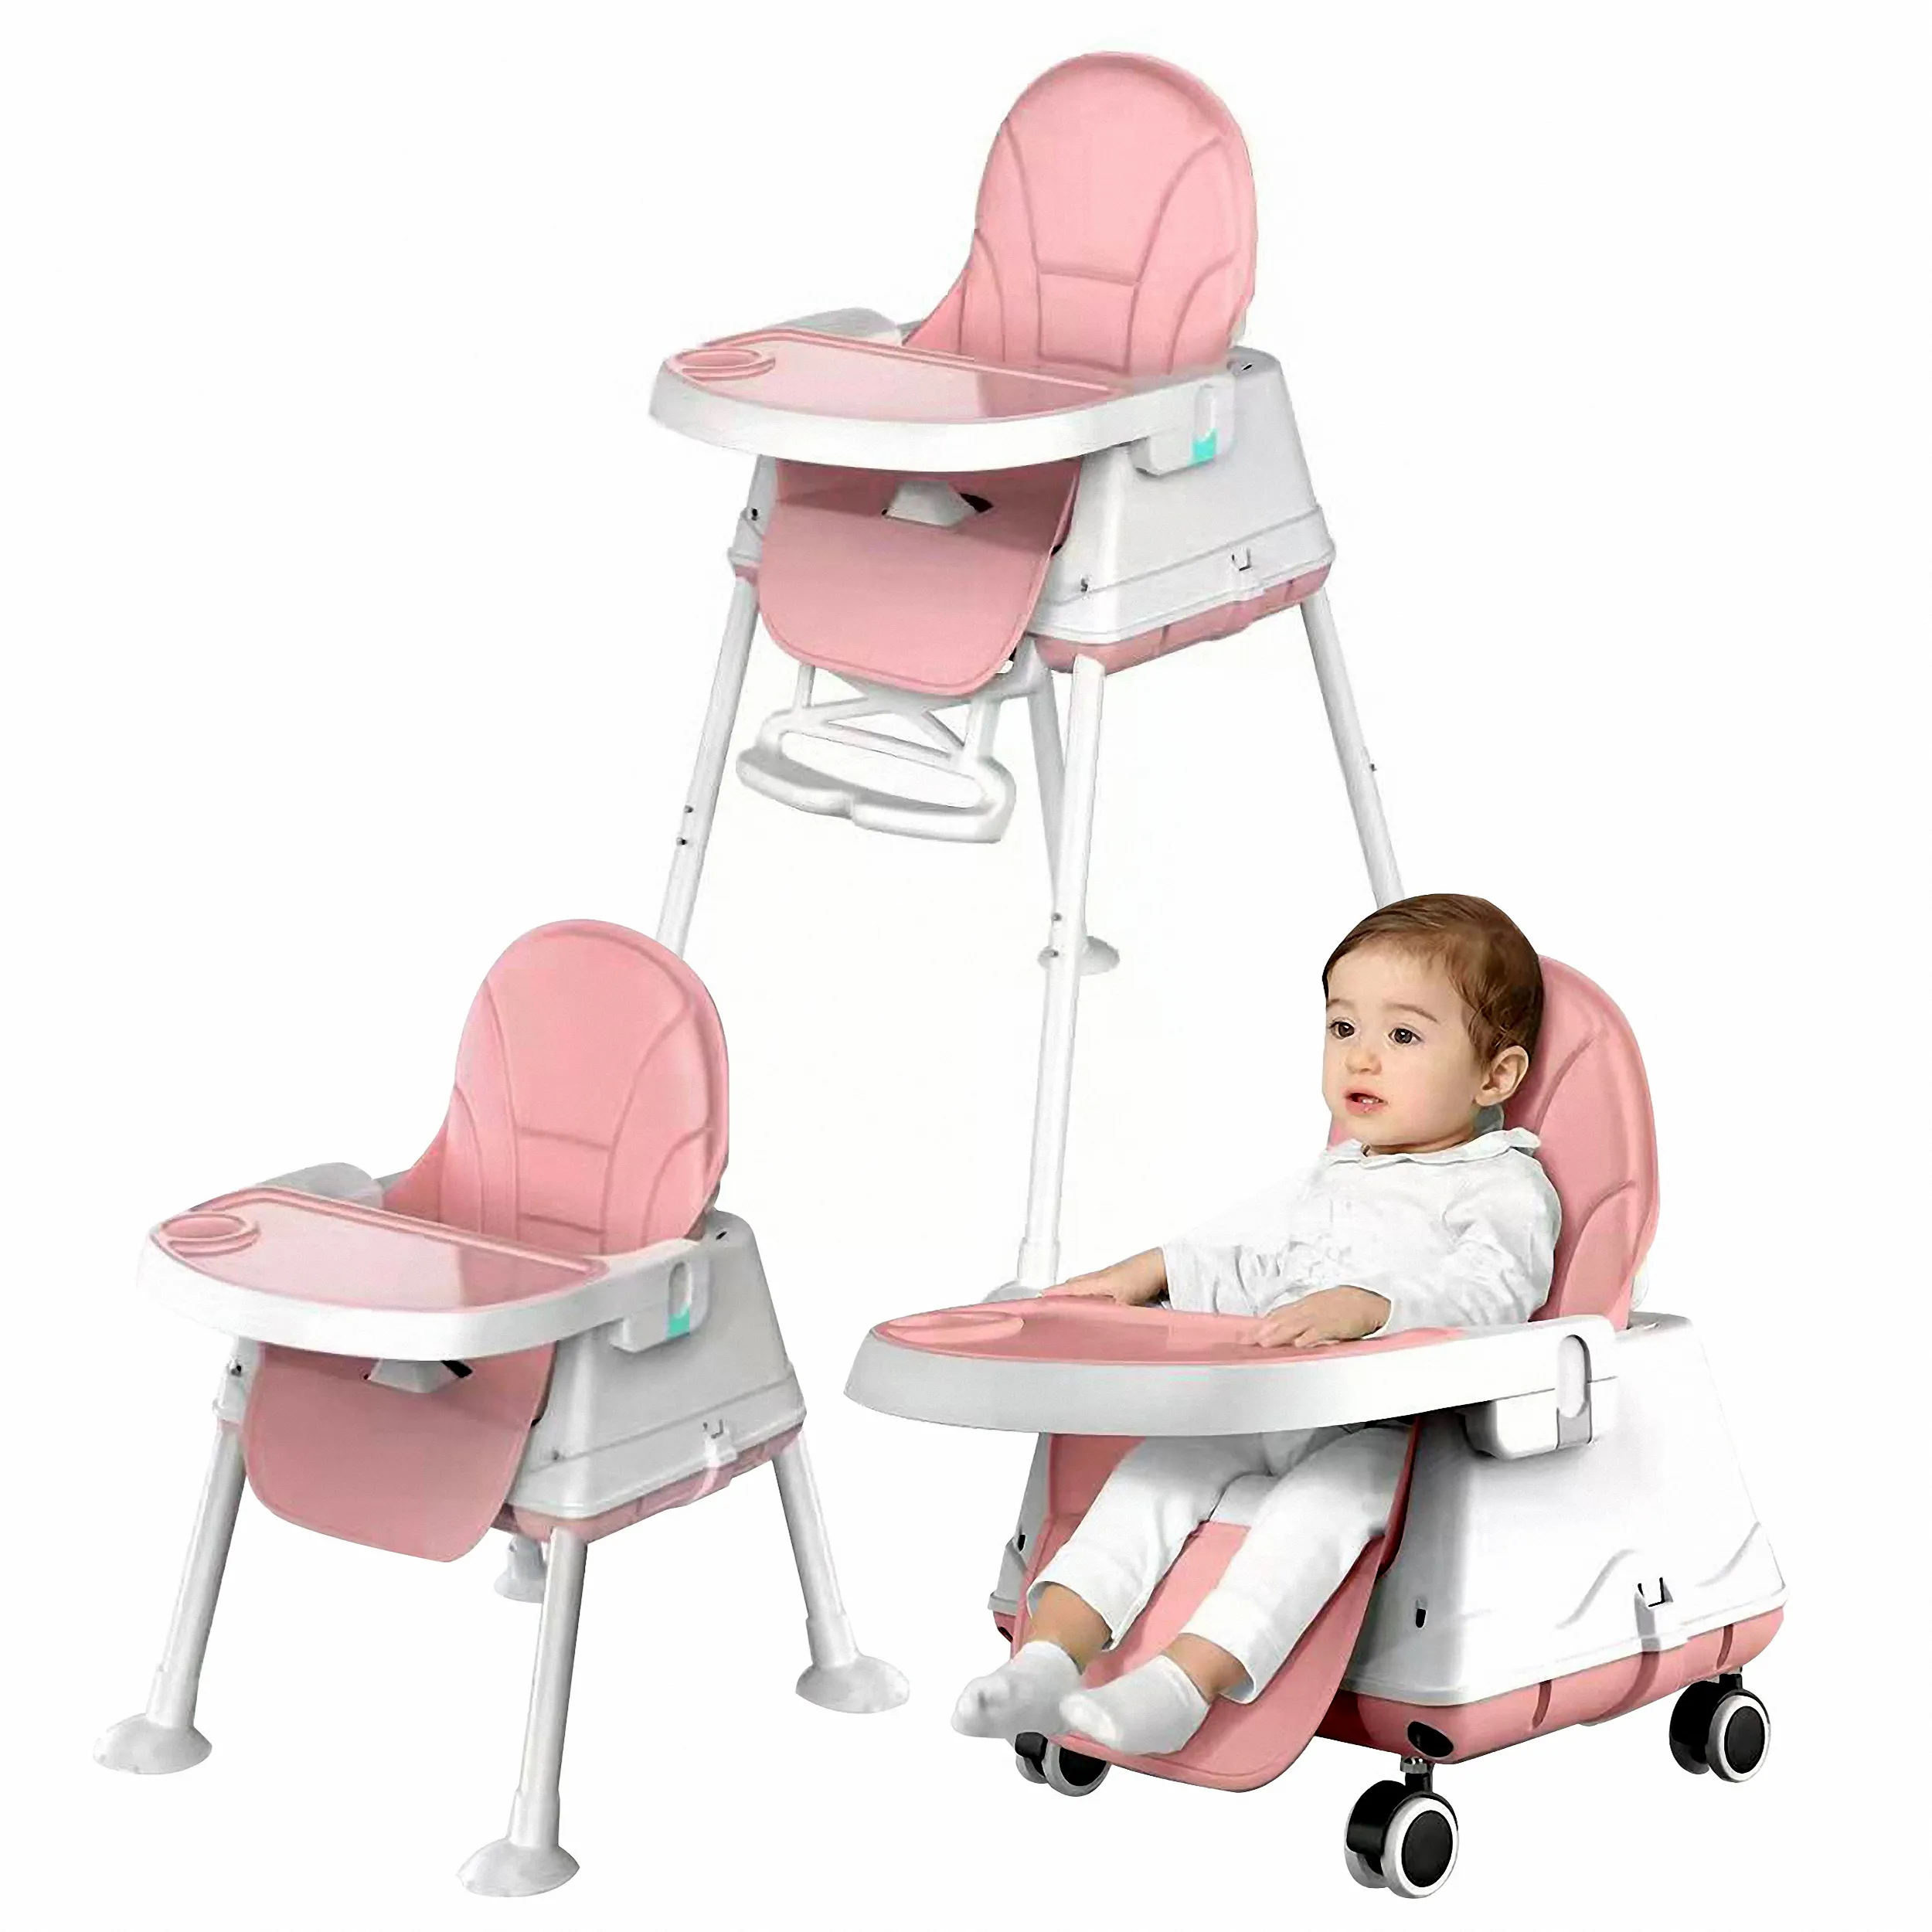 Baby High Feeding Chair Tragbarer Kinder tisch Klappbarer Esszimmers tuhl Höhen verstellbarer Baby hochstuhl 3 in 1